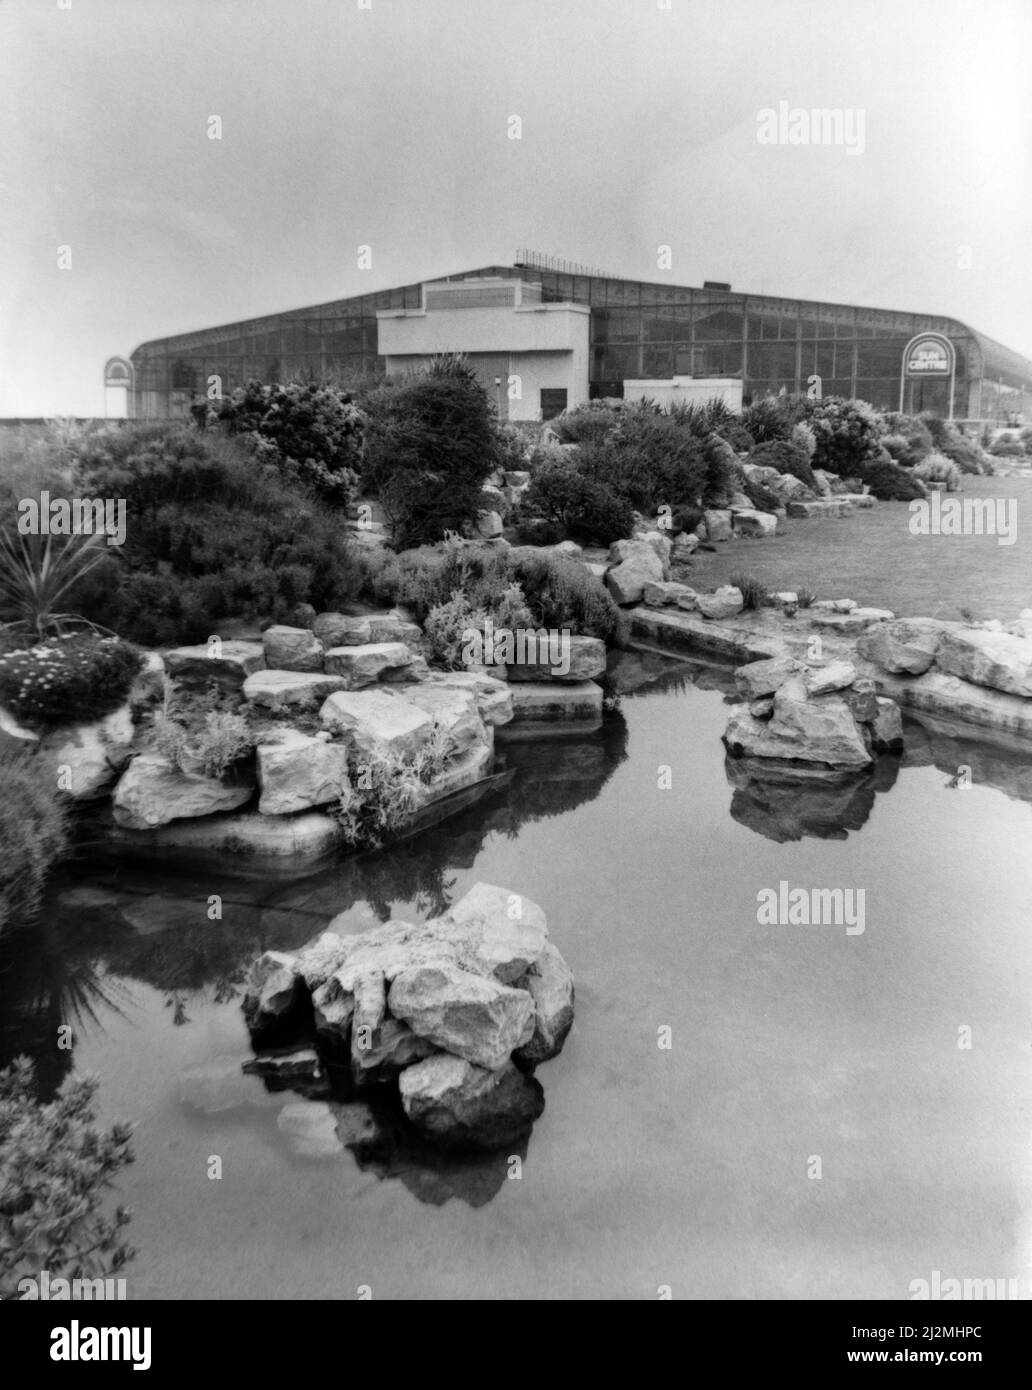 Rhyl Sun Center, Rhyl, pays de Galles du Nord. Jardins fleuris et étangs sur la promenade Rhyl avec le centre du soleil en arrière-plan. Vers 1991. Banque D'Images